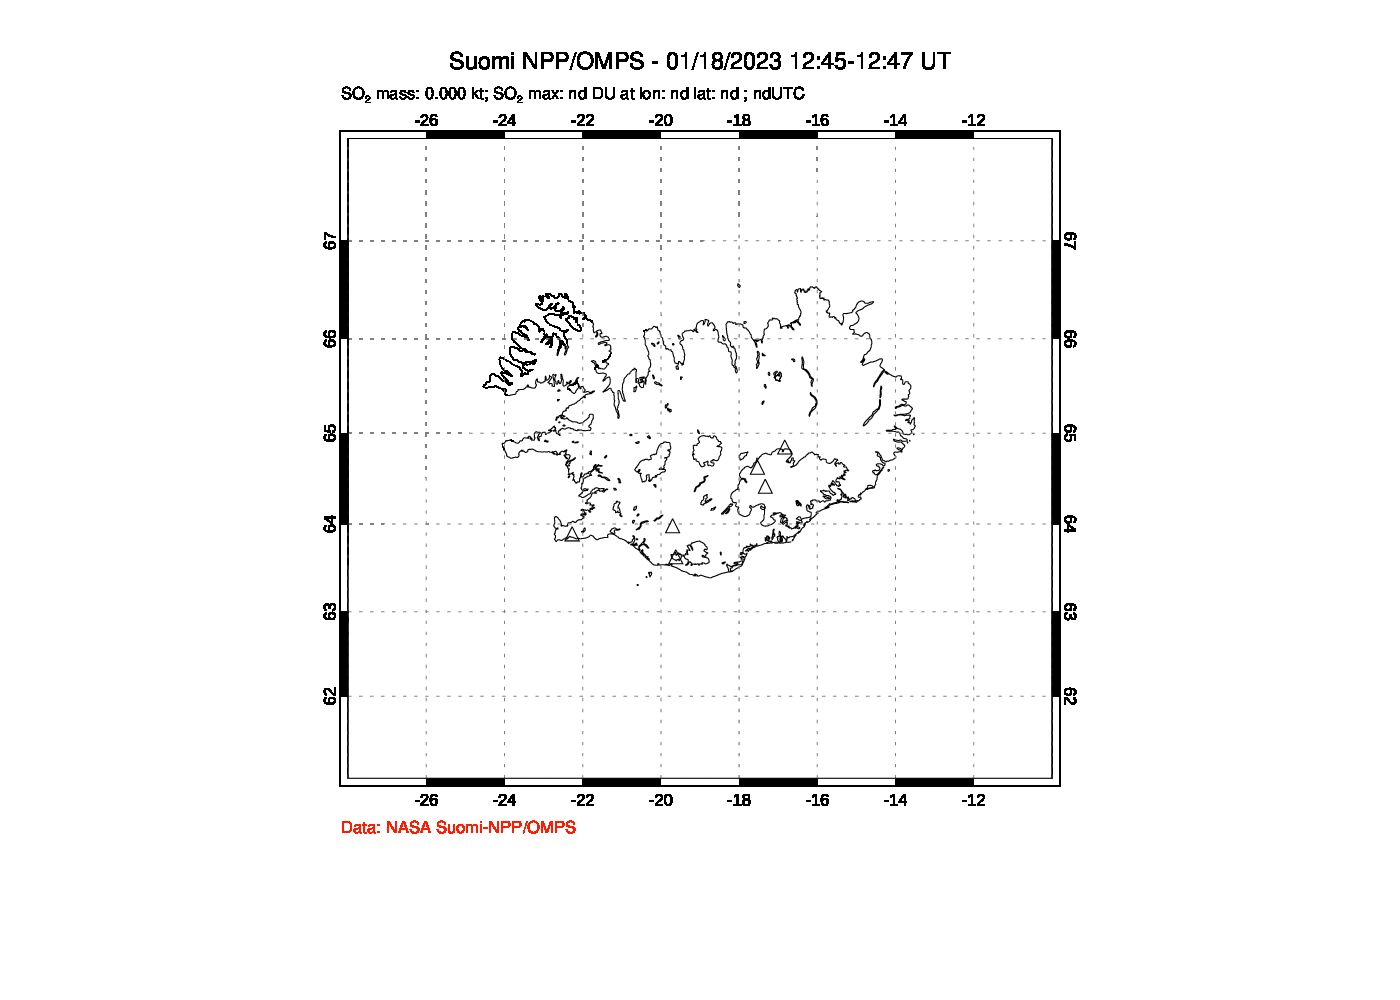 A sulfur dioxide image over Iceland on Jan 18, 2023.